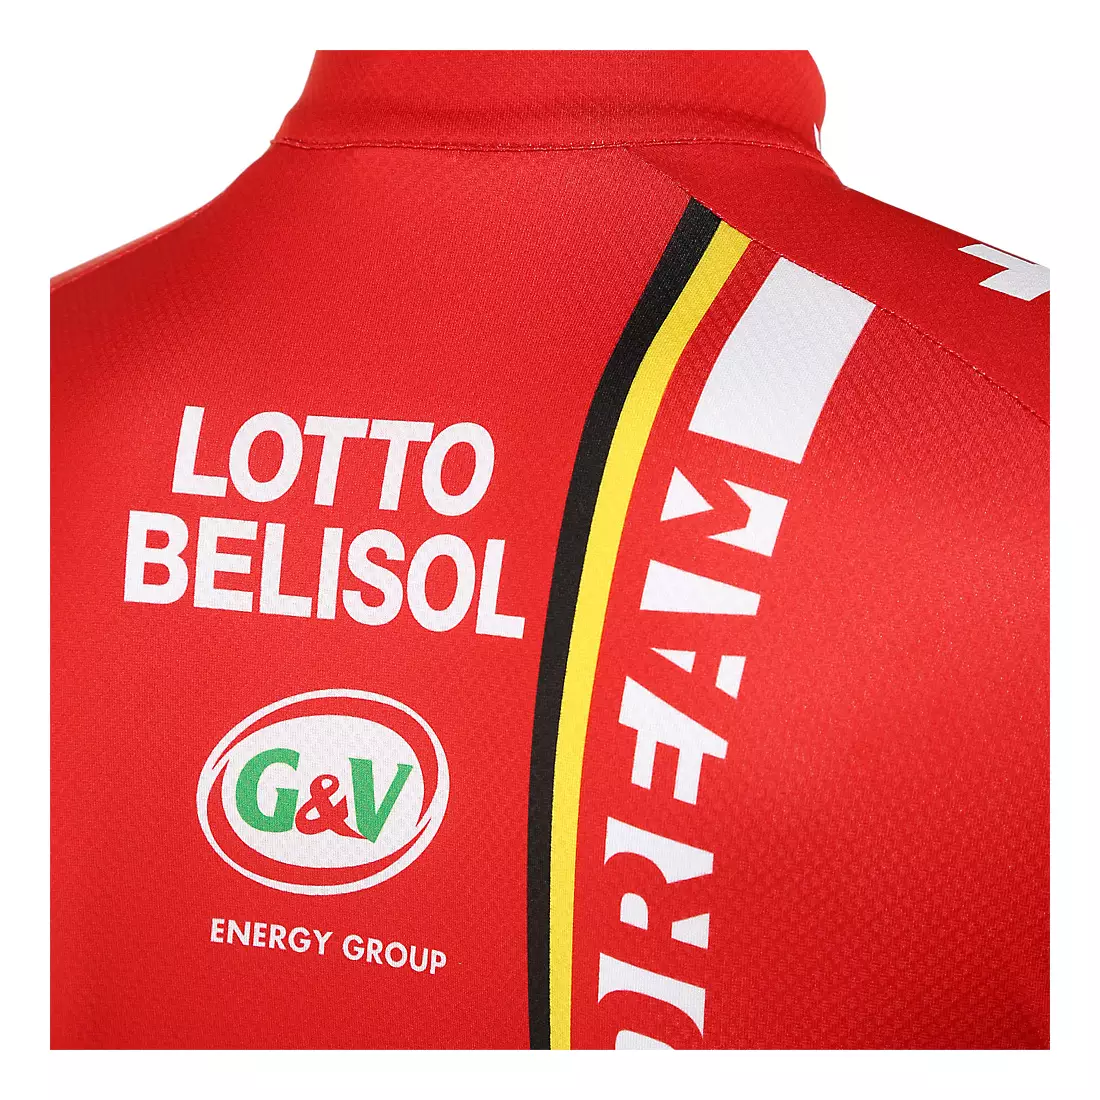 Cyklistický dres VERMARC - LOTTO BELISOL 2014, celoprepínací na zips